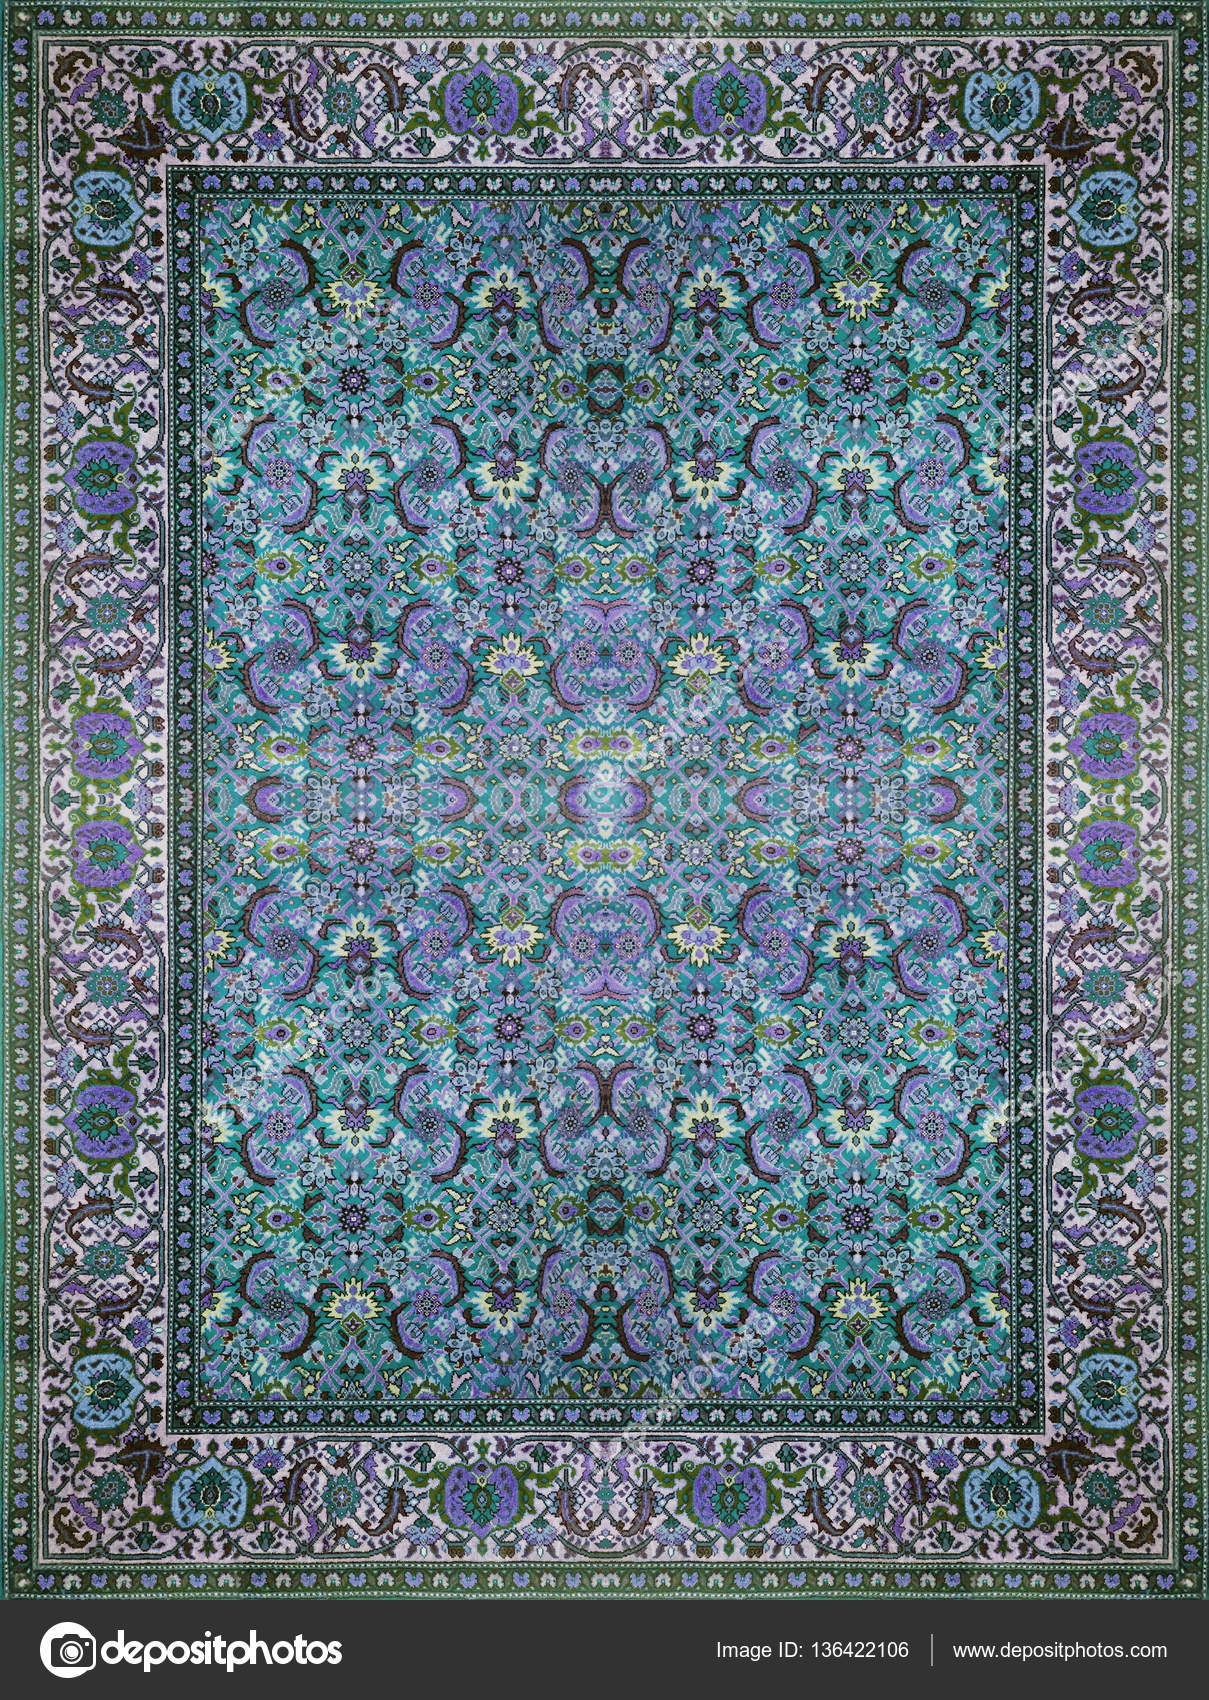 Wonderbaarlijk Perzisch tapijt textuur, abstract ornament. Ronde mandala patroon OO-35